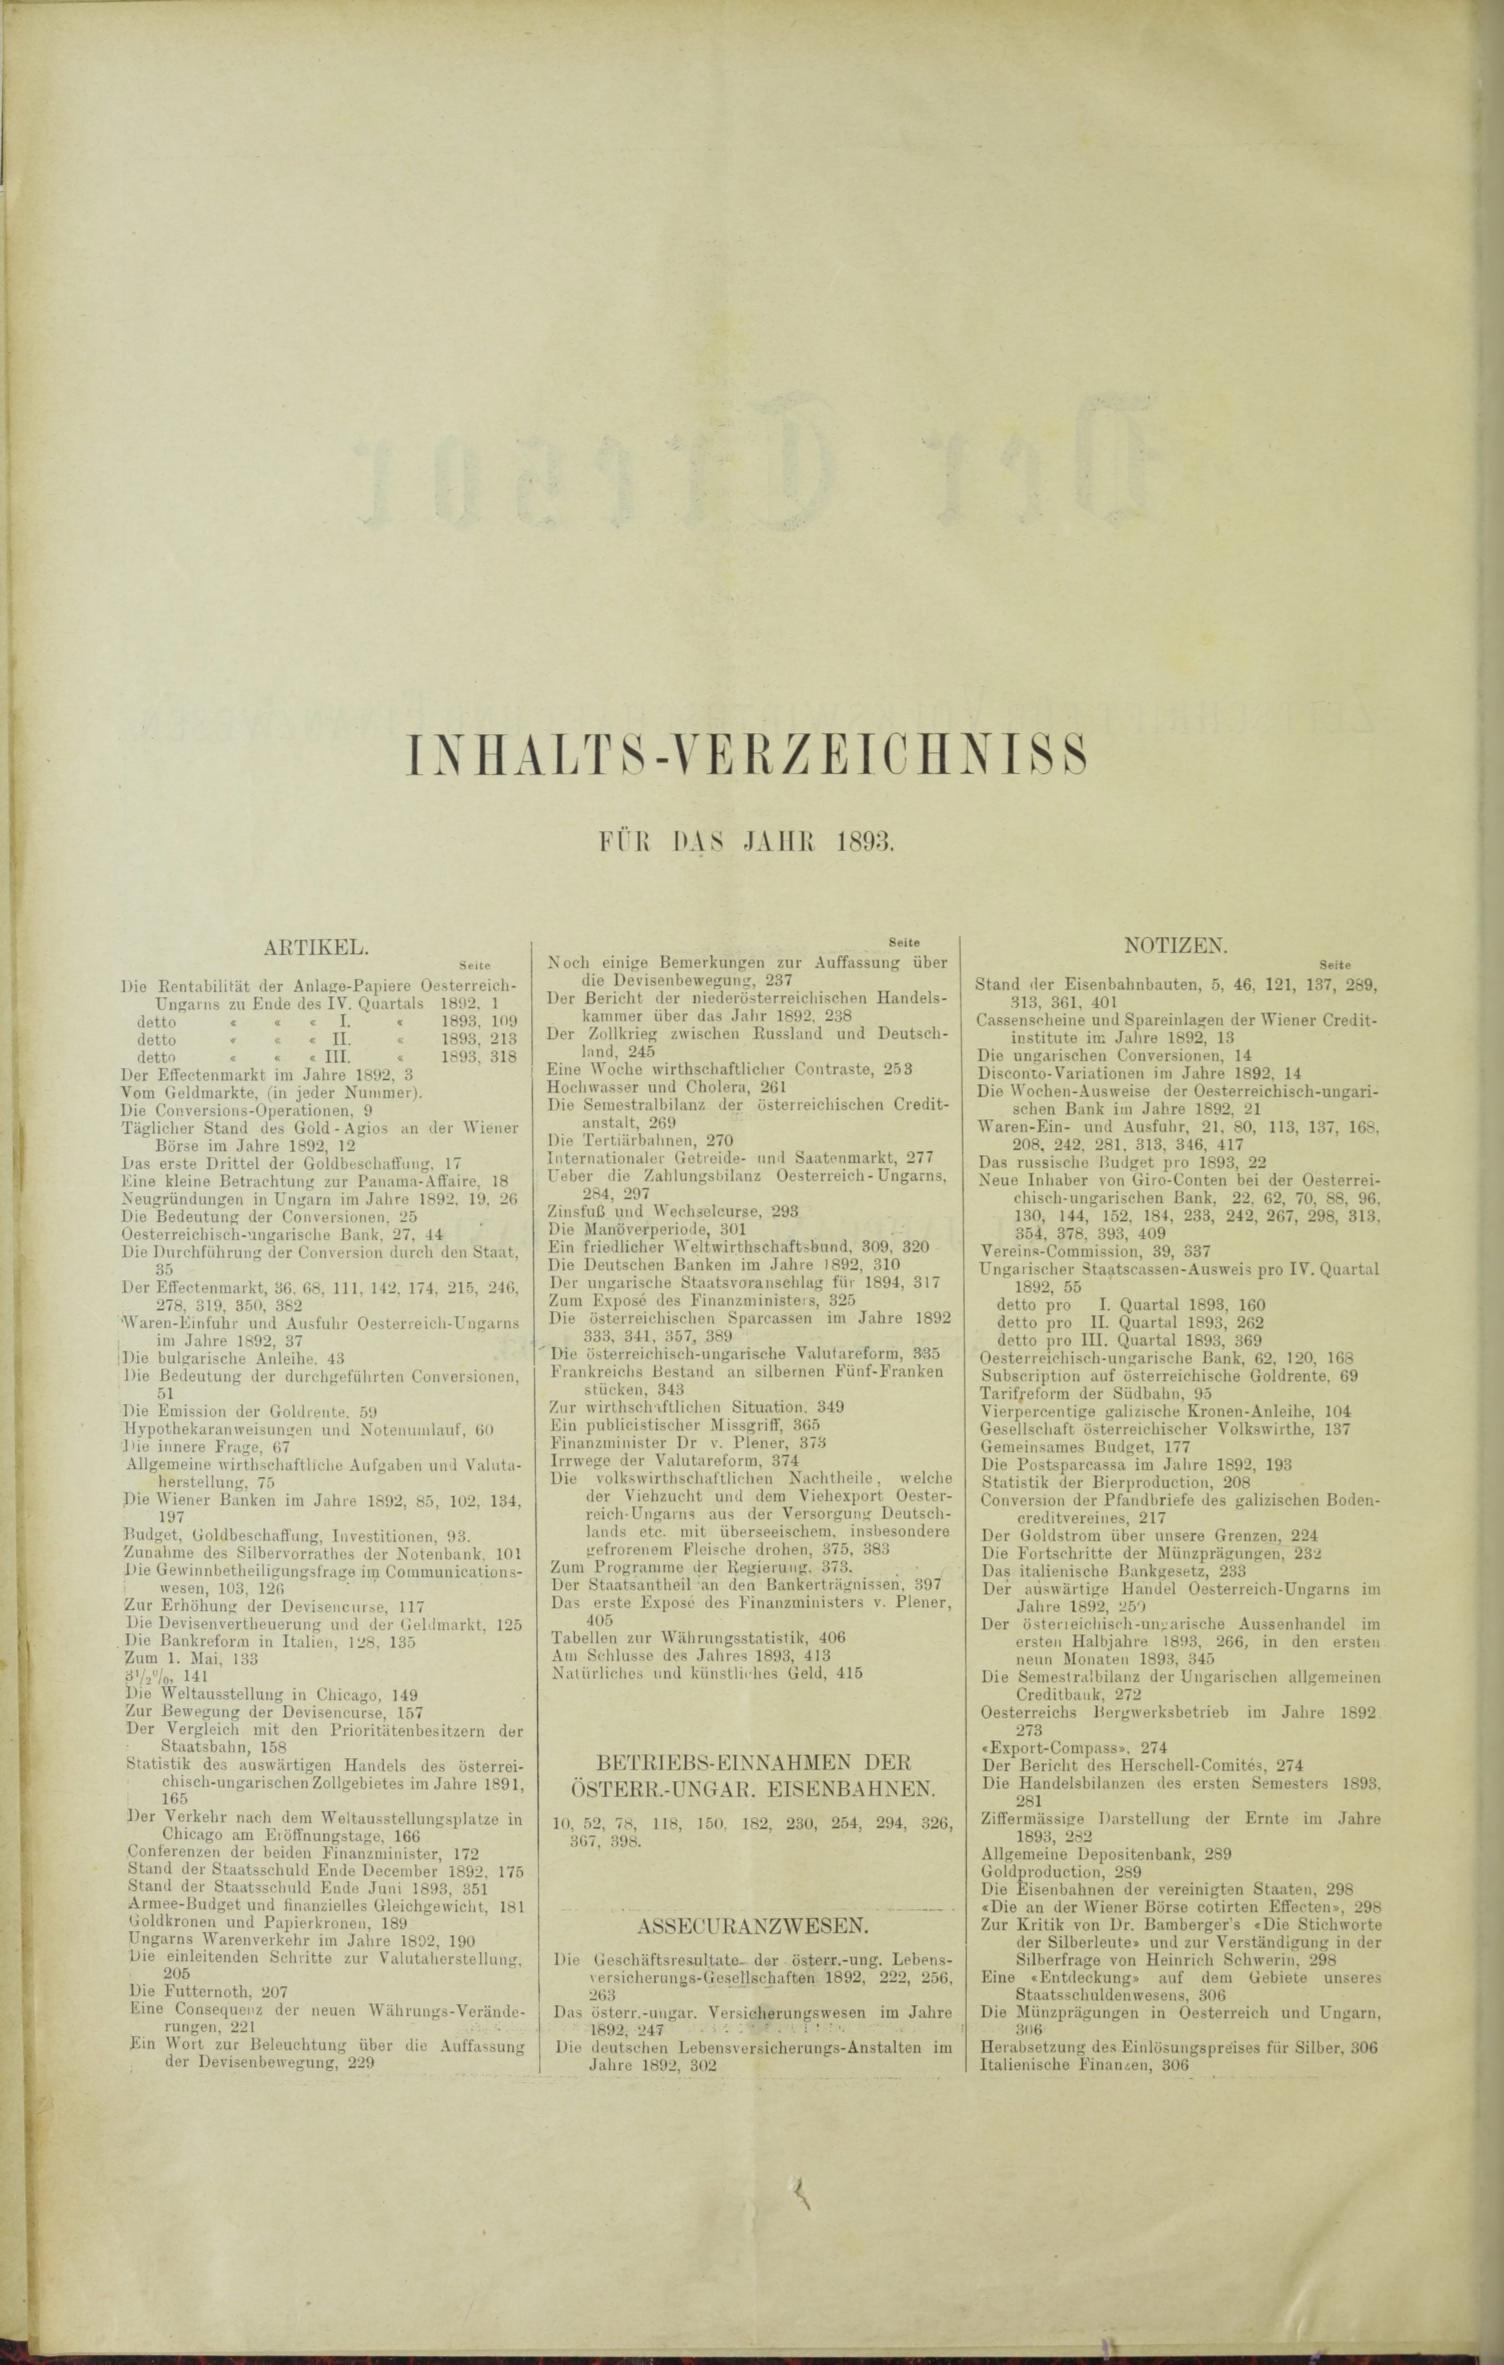 Der Tresor 20.04.1893 - Seite 10